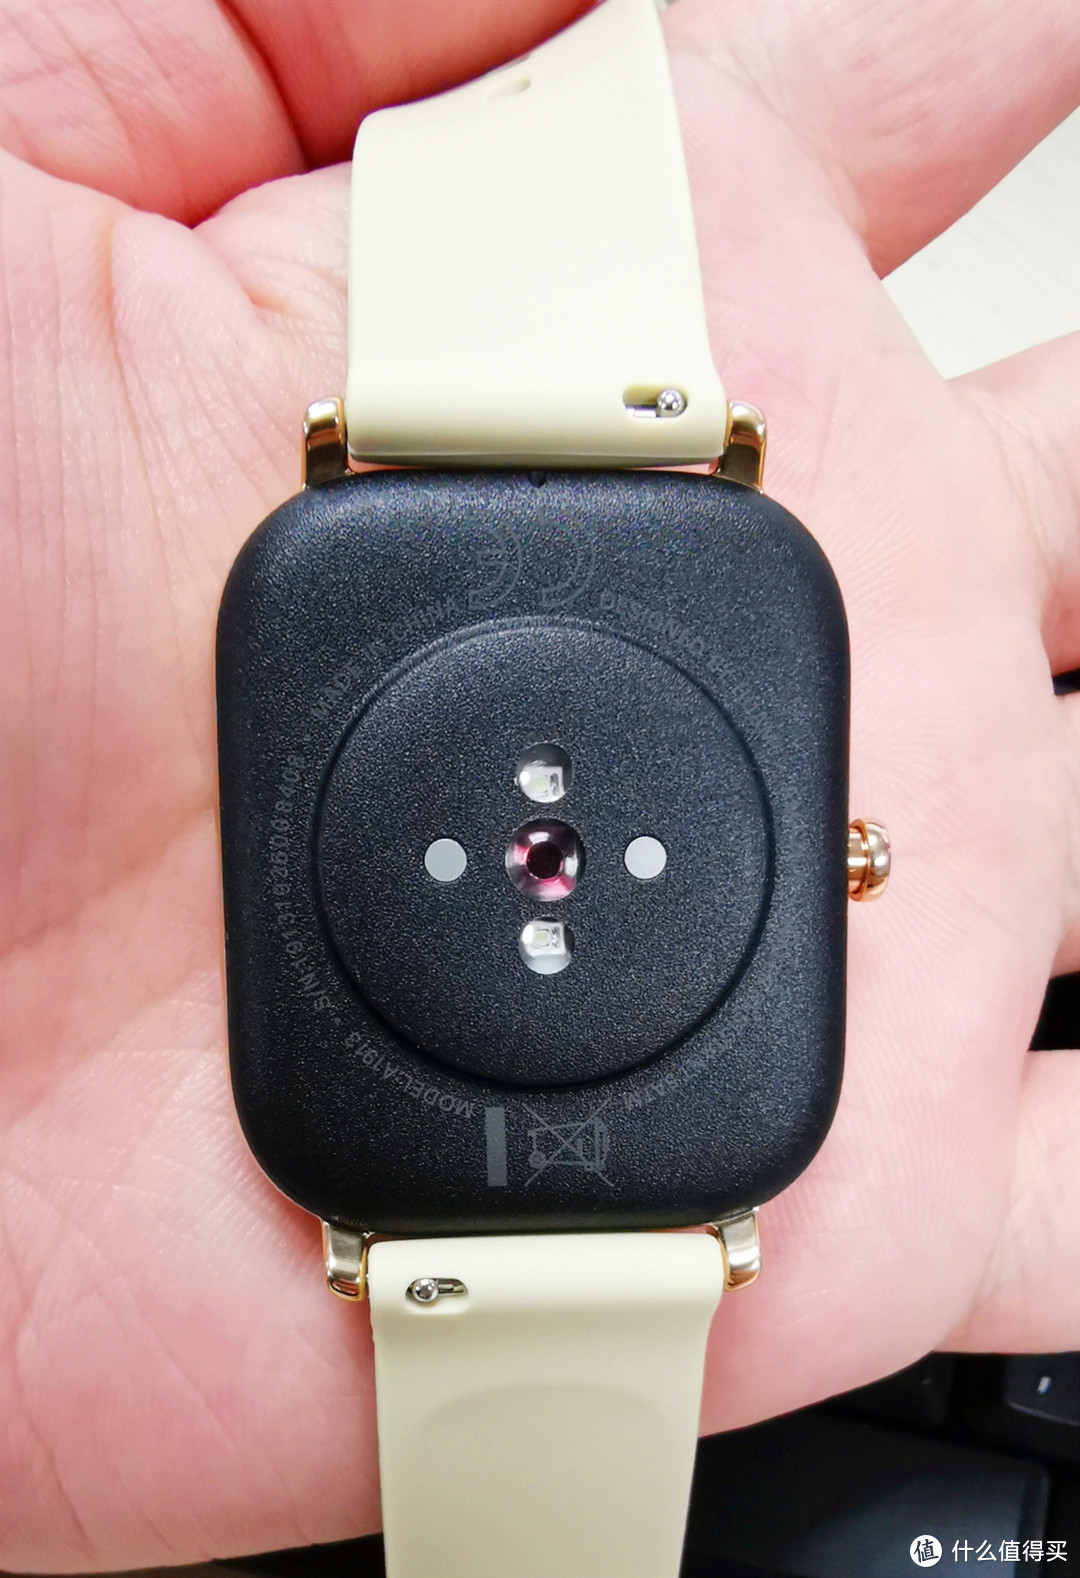 外观长得像Apple Watch的国产智能手表：Amazfit GTS 使用体验